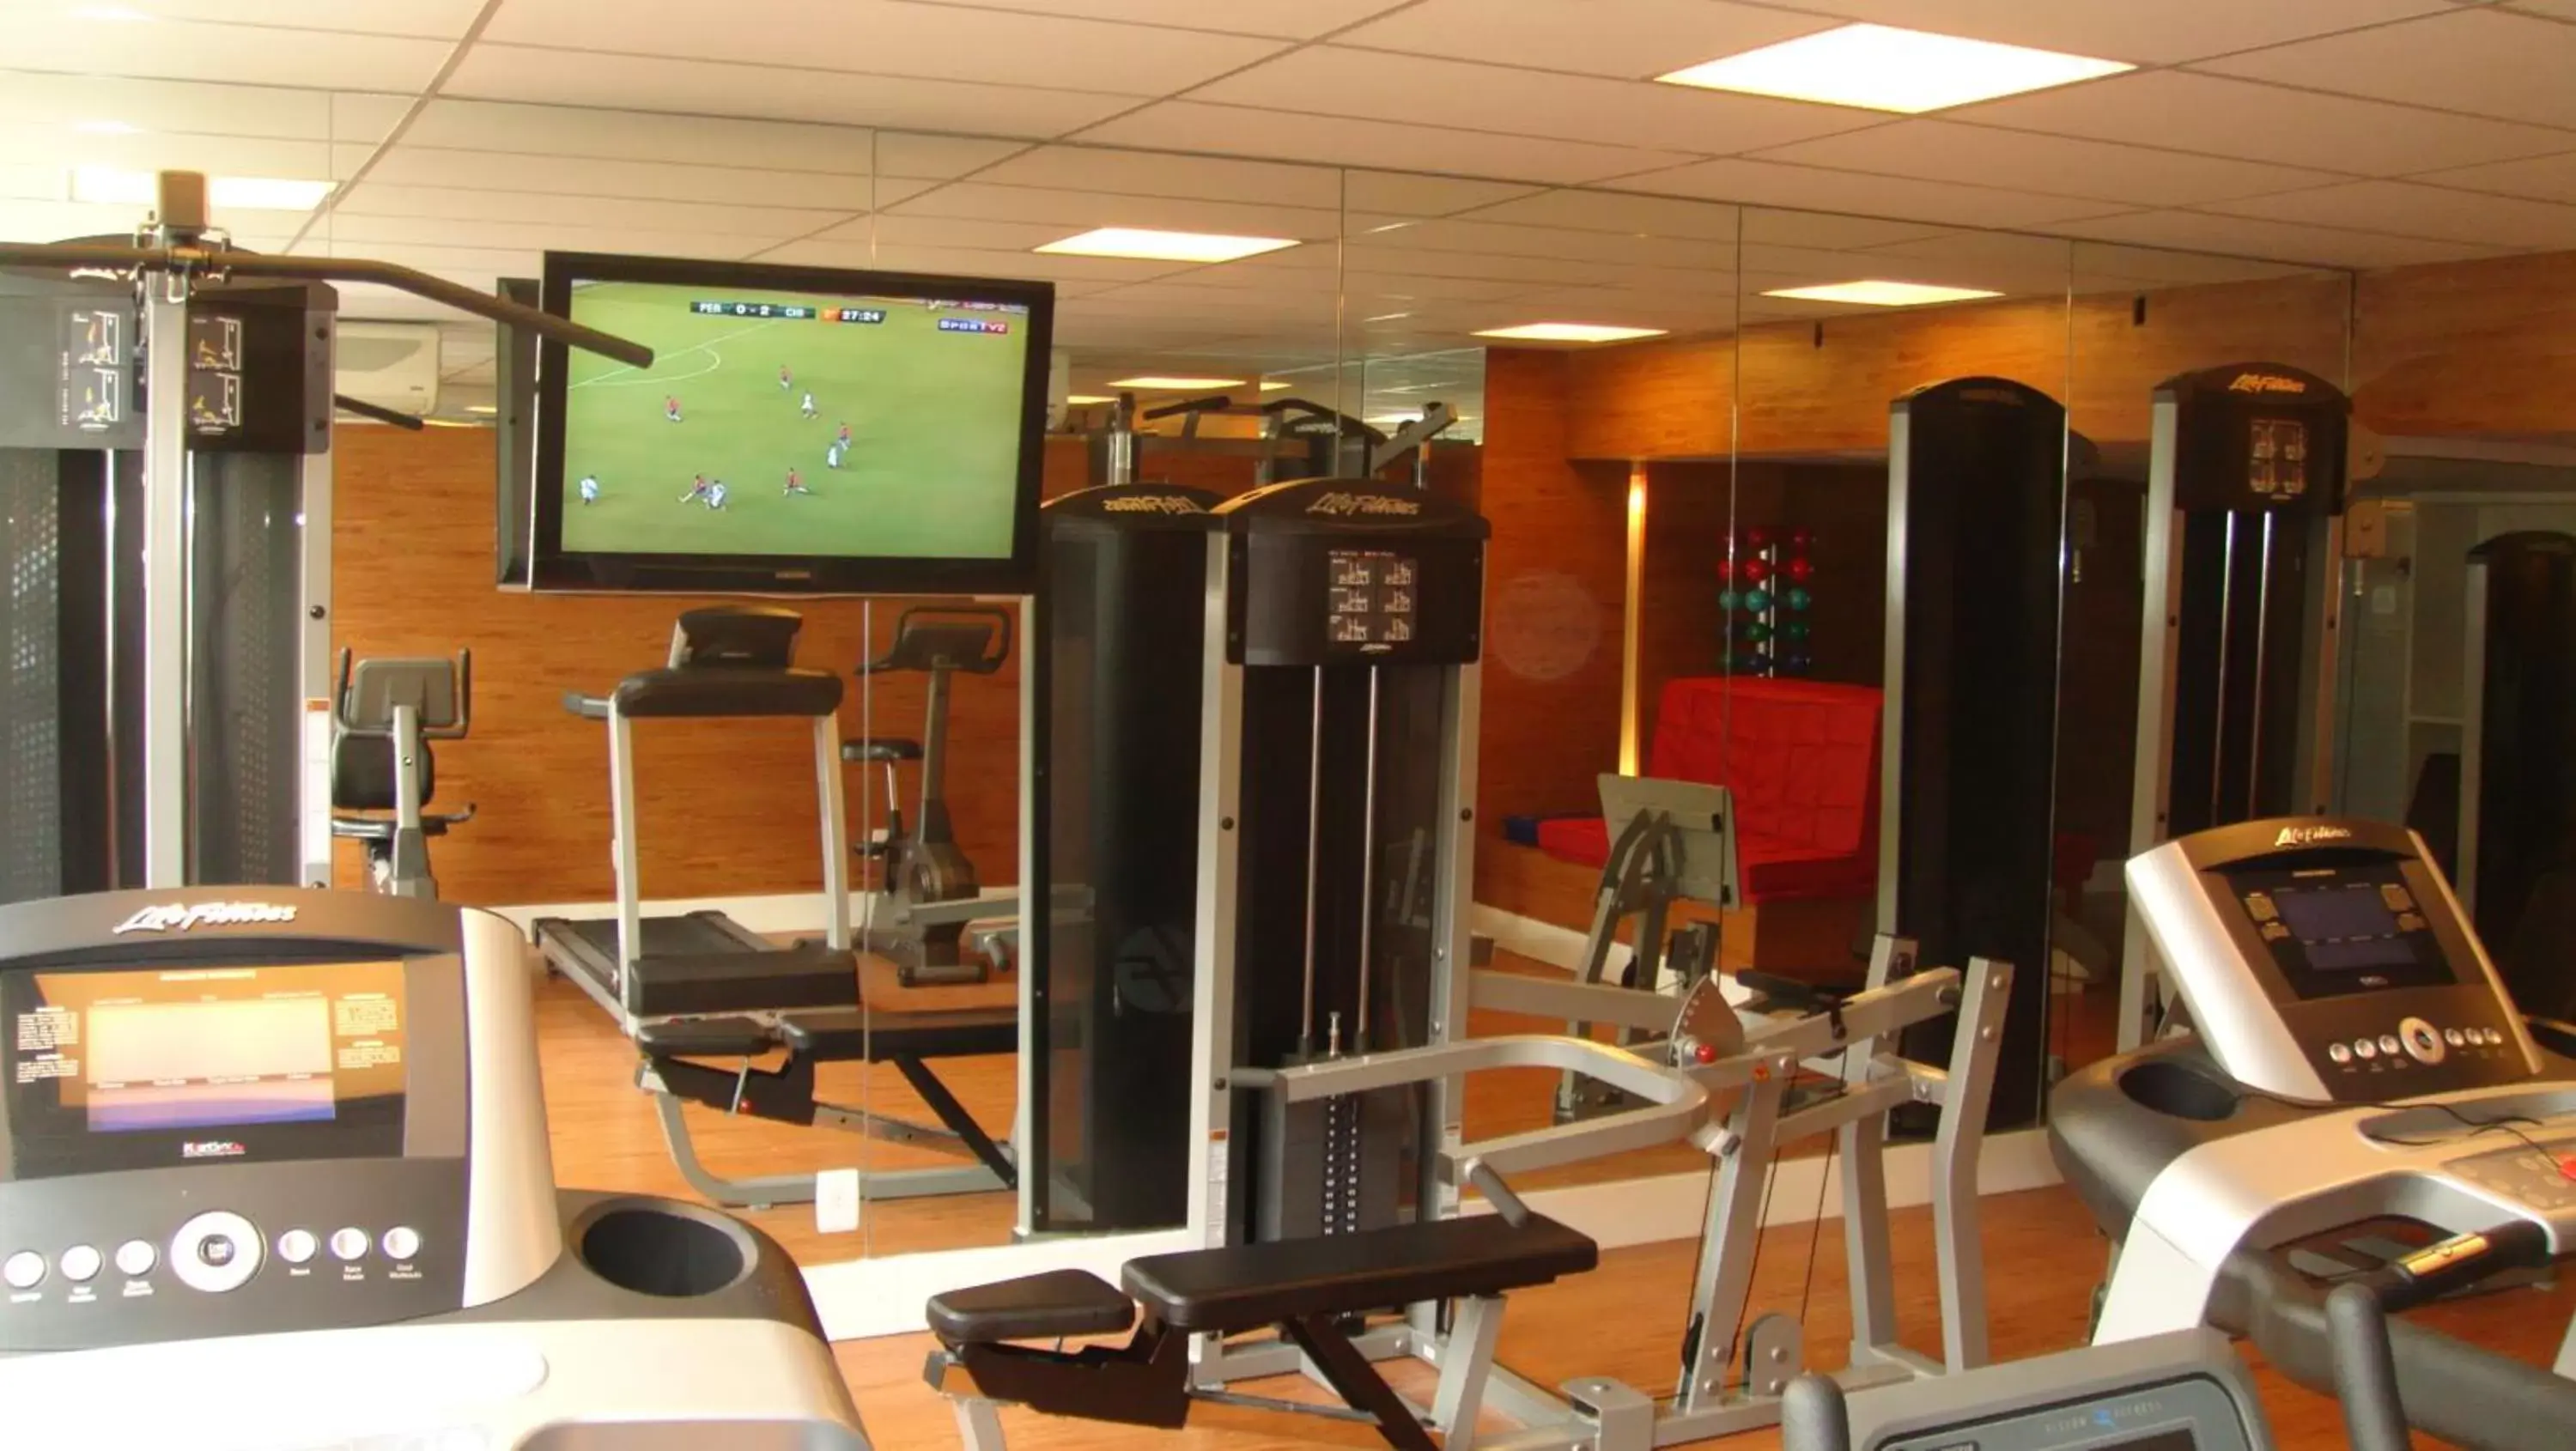 Fitness centre/facilities, Fitness Center/Facilities in Augusto's Rio Copa Hotel